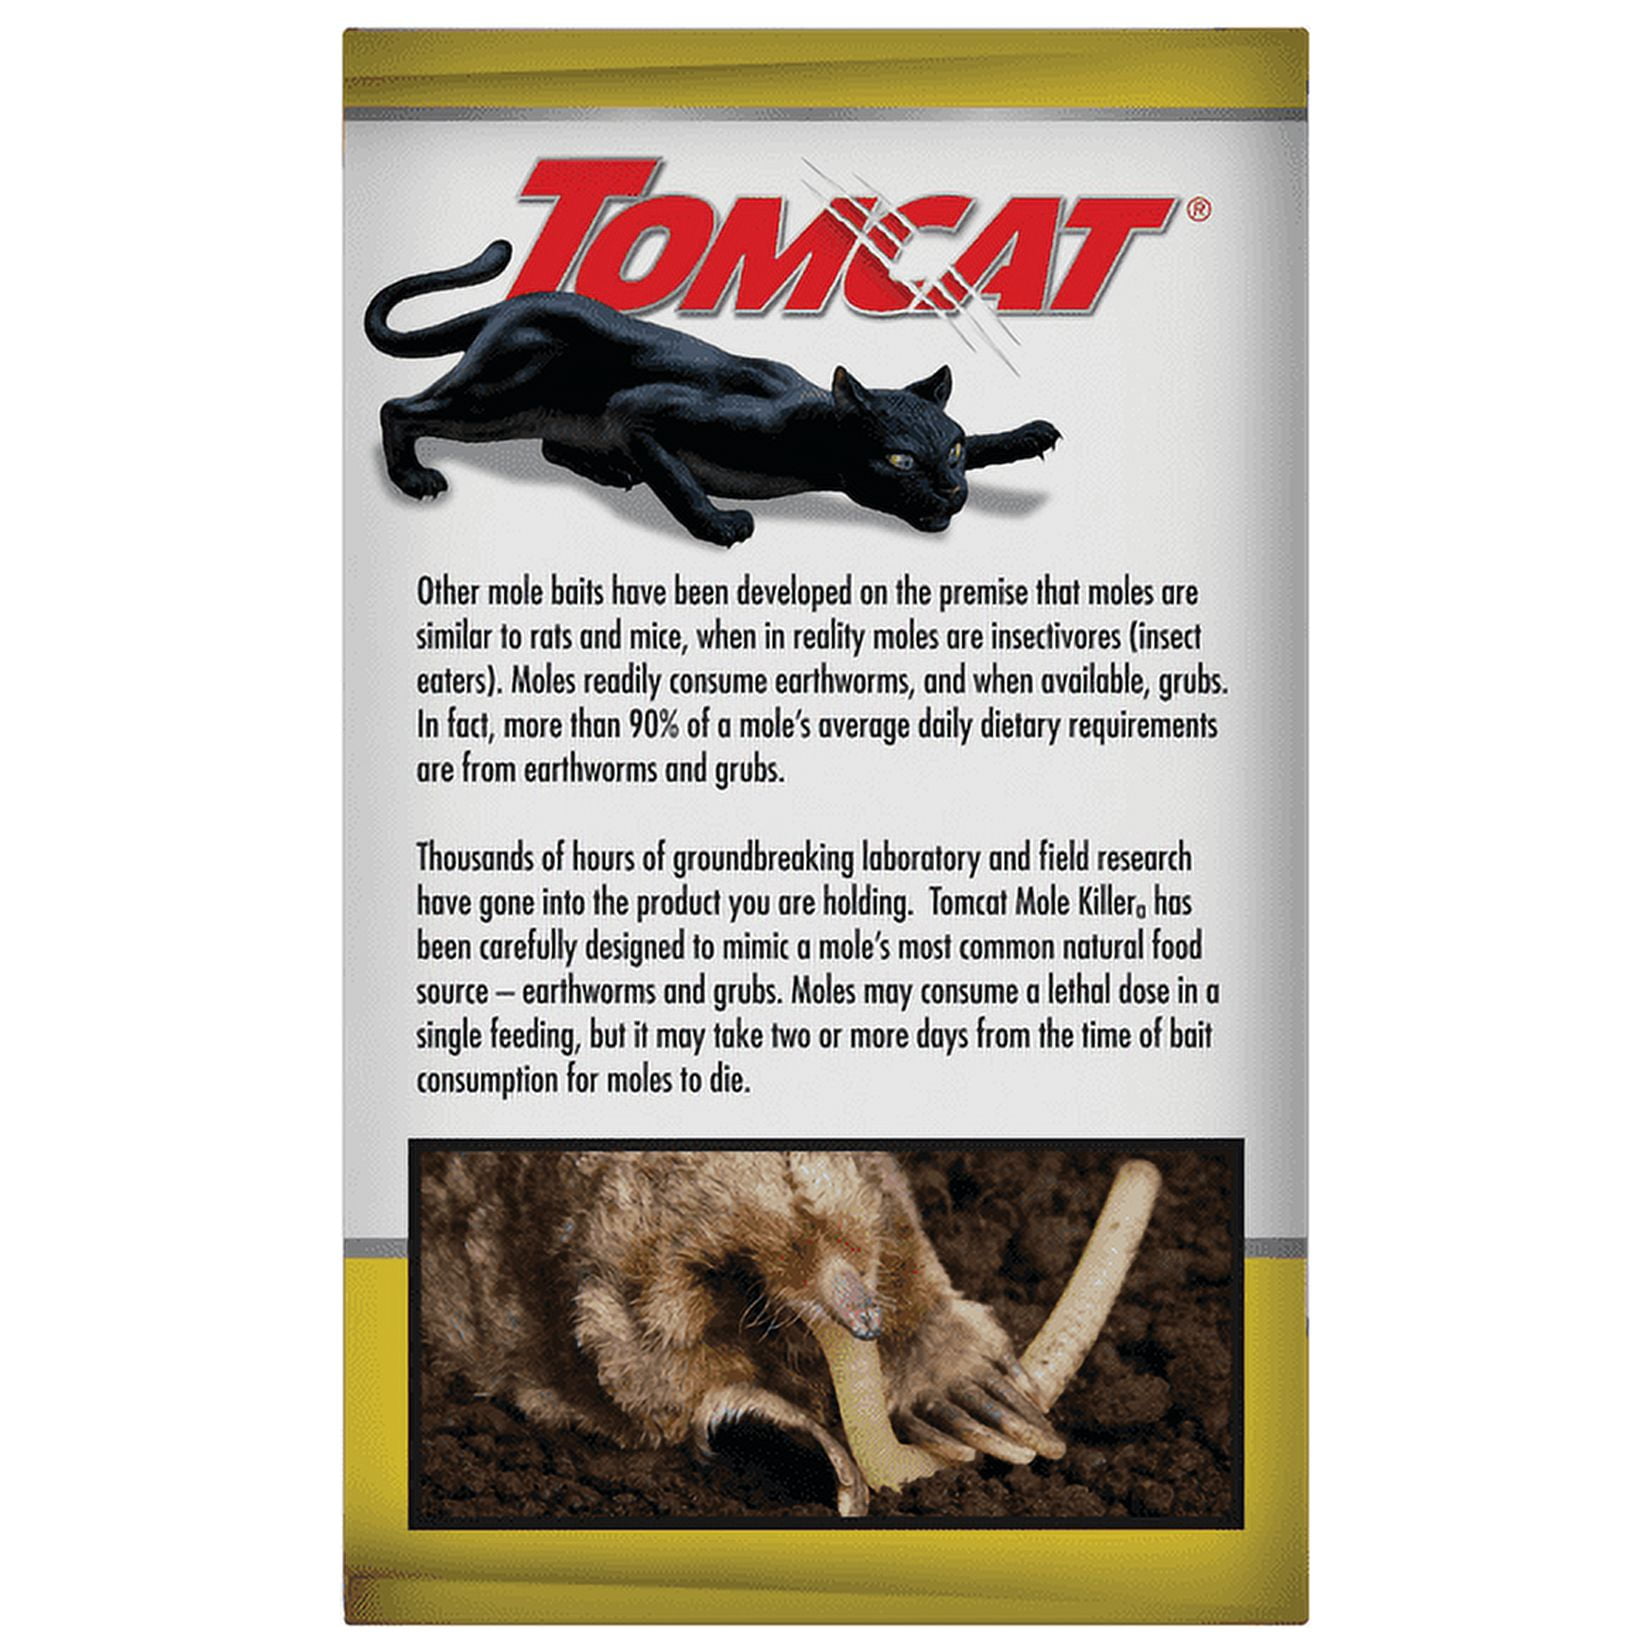 TOMCAT Mole Killer (10-Pack) - Kibler Lumber